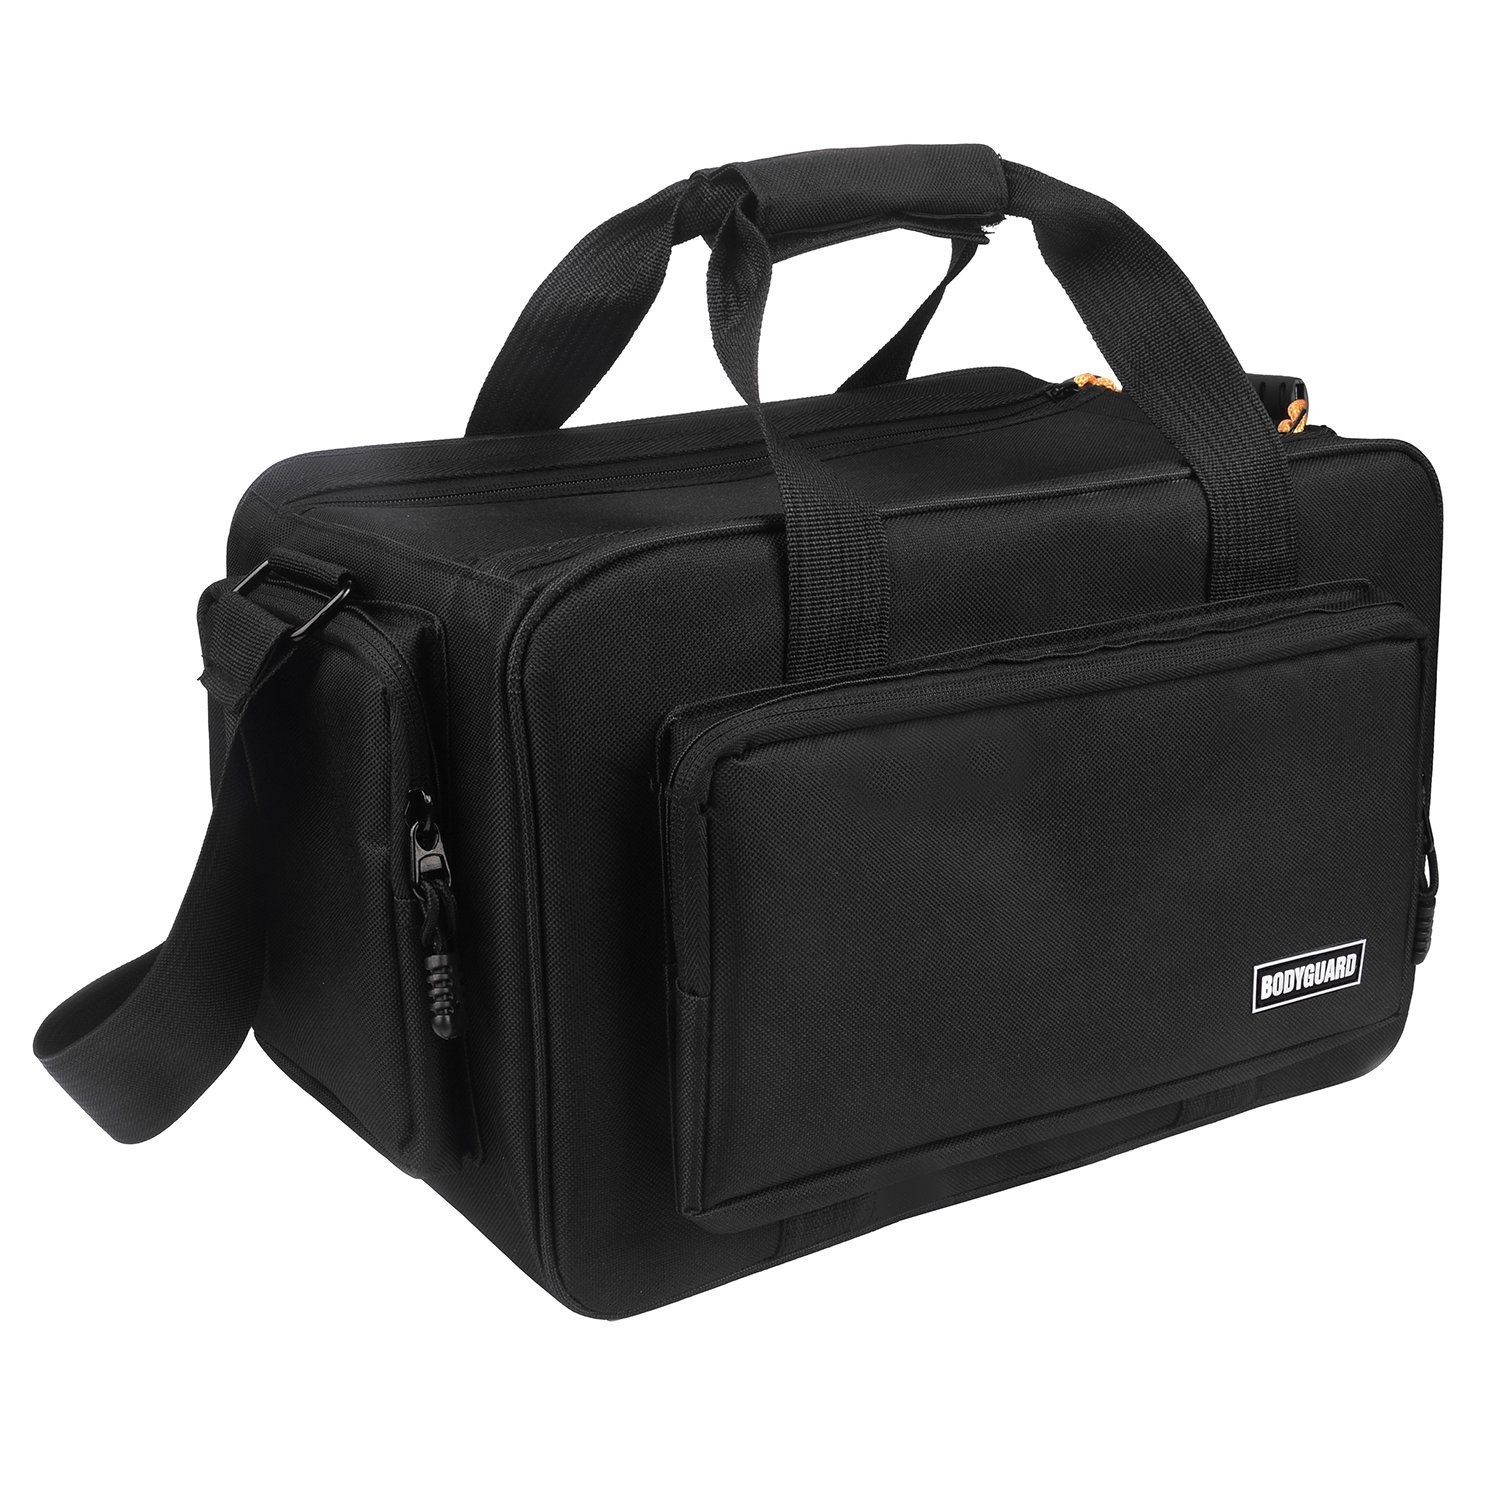 Bodyguard Fototasche SLR XL XXL XXXL Taschen schwarz, für große Foto und Videokamera Tasche mit Variable Inneneinteilung für 5 Fächer | Alle Damentaschen